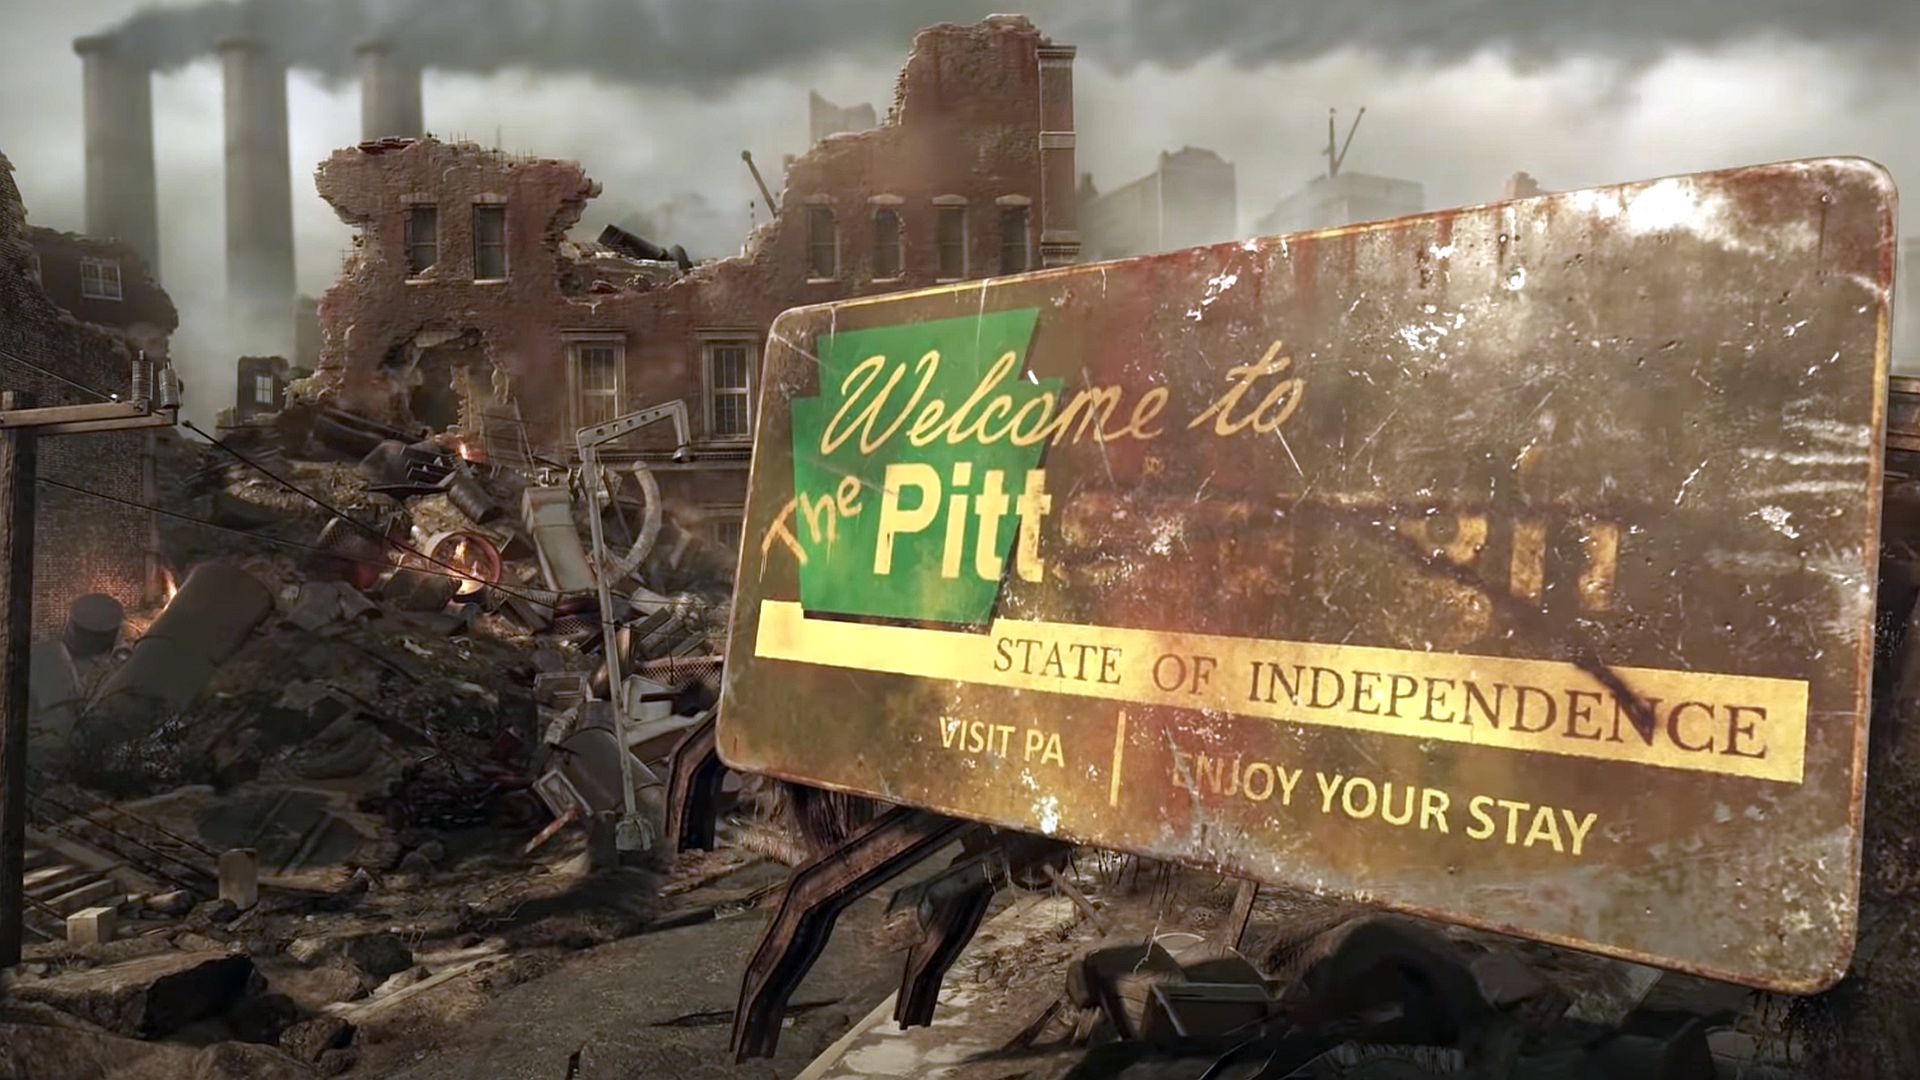 Fallout 76-k Appalachiatik haratago eramaten ditu jokalariak datorren urtean lehen aldiz